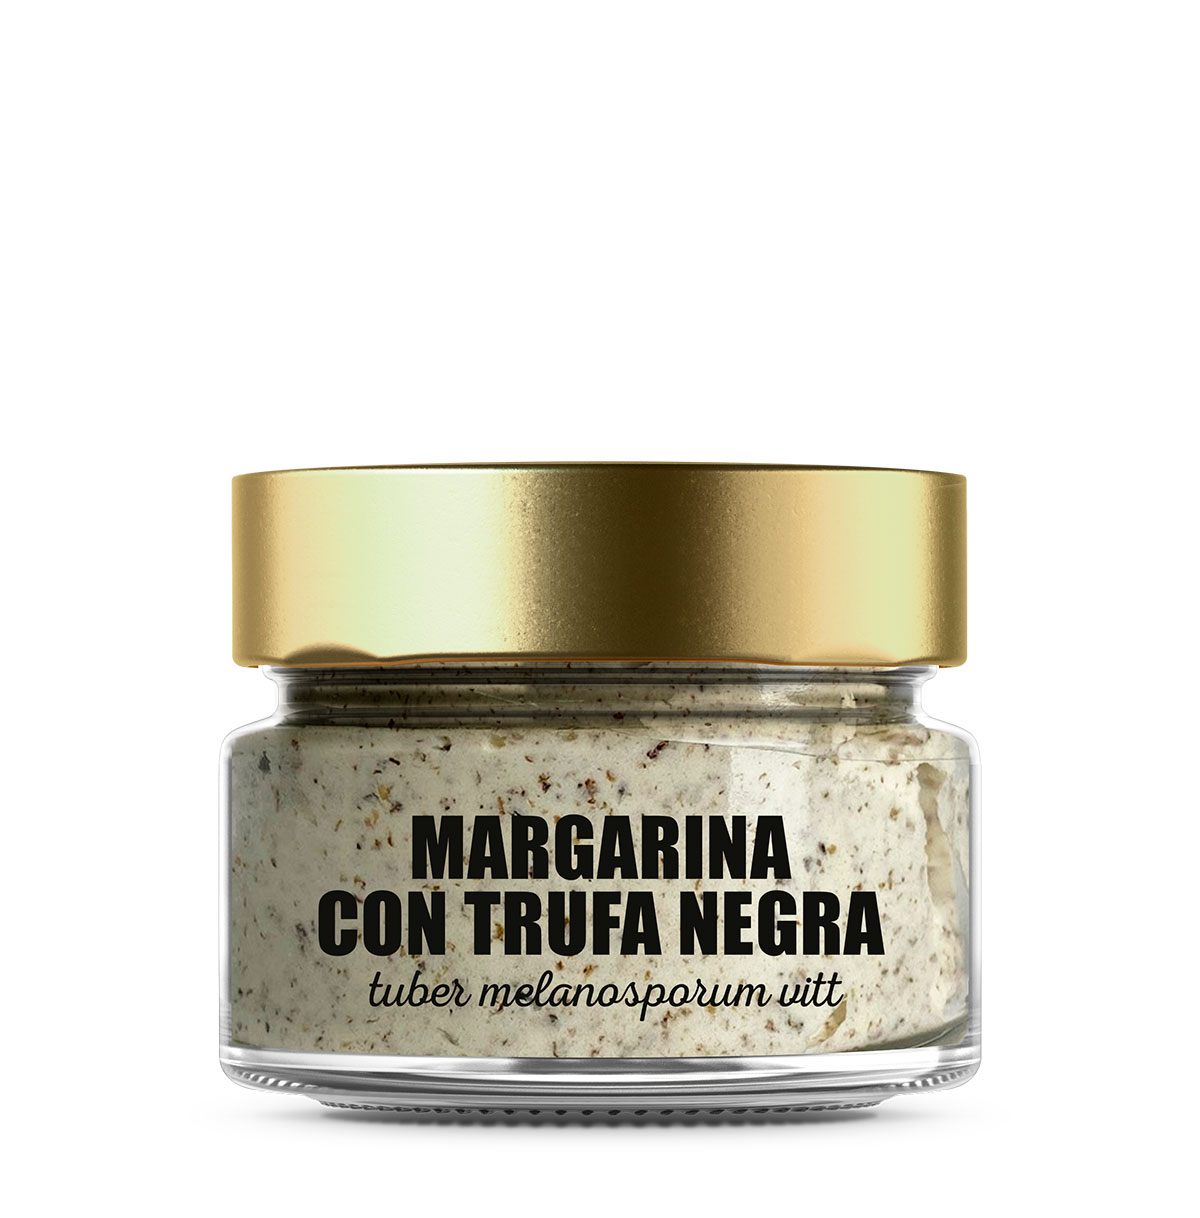 Black truffle margarine tuber melanosporum vitt